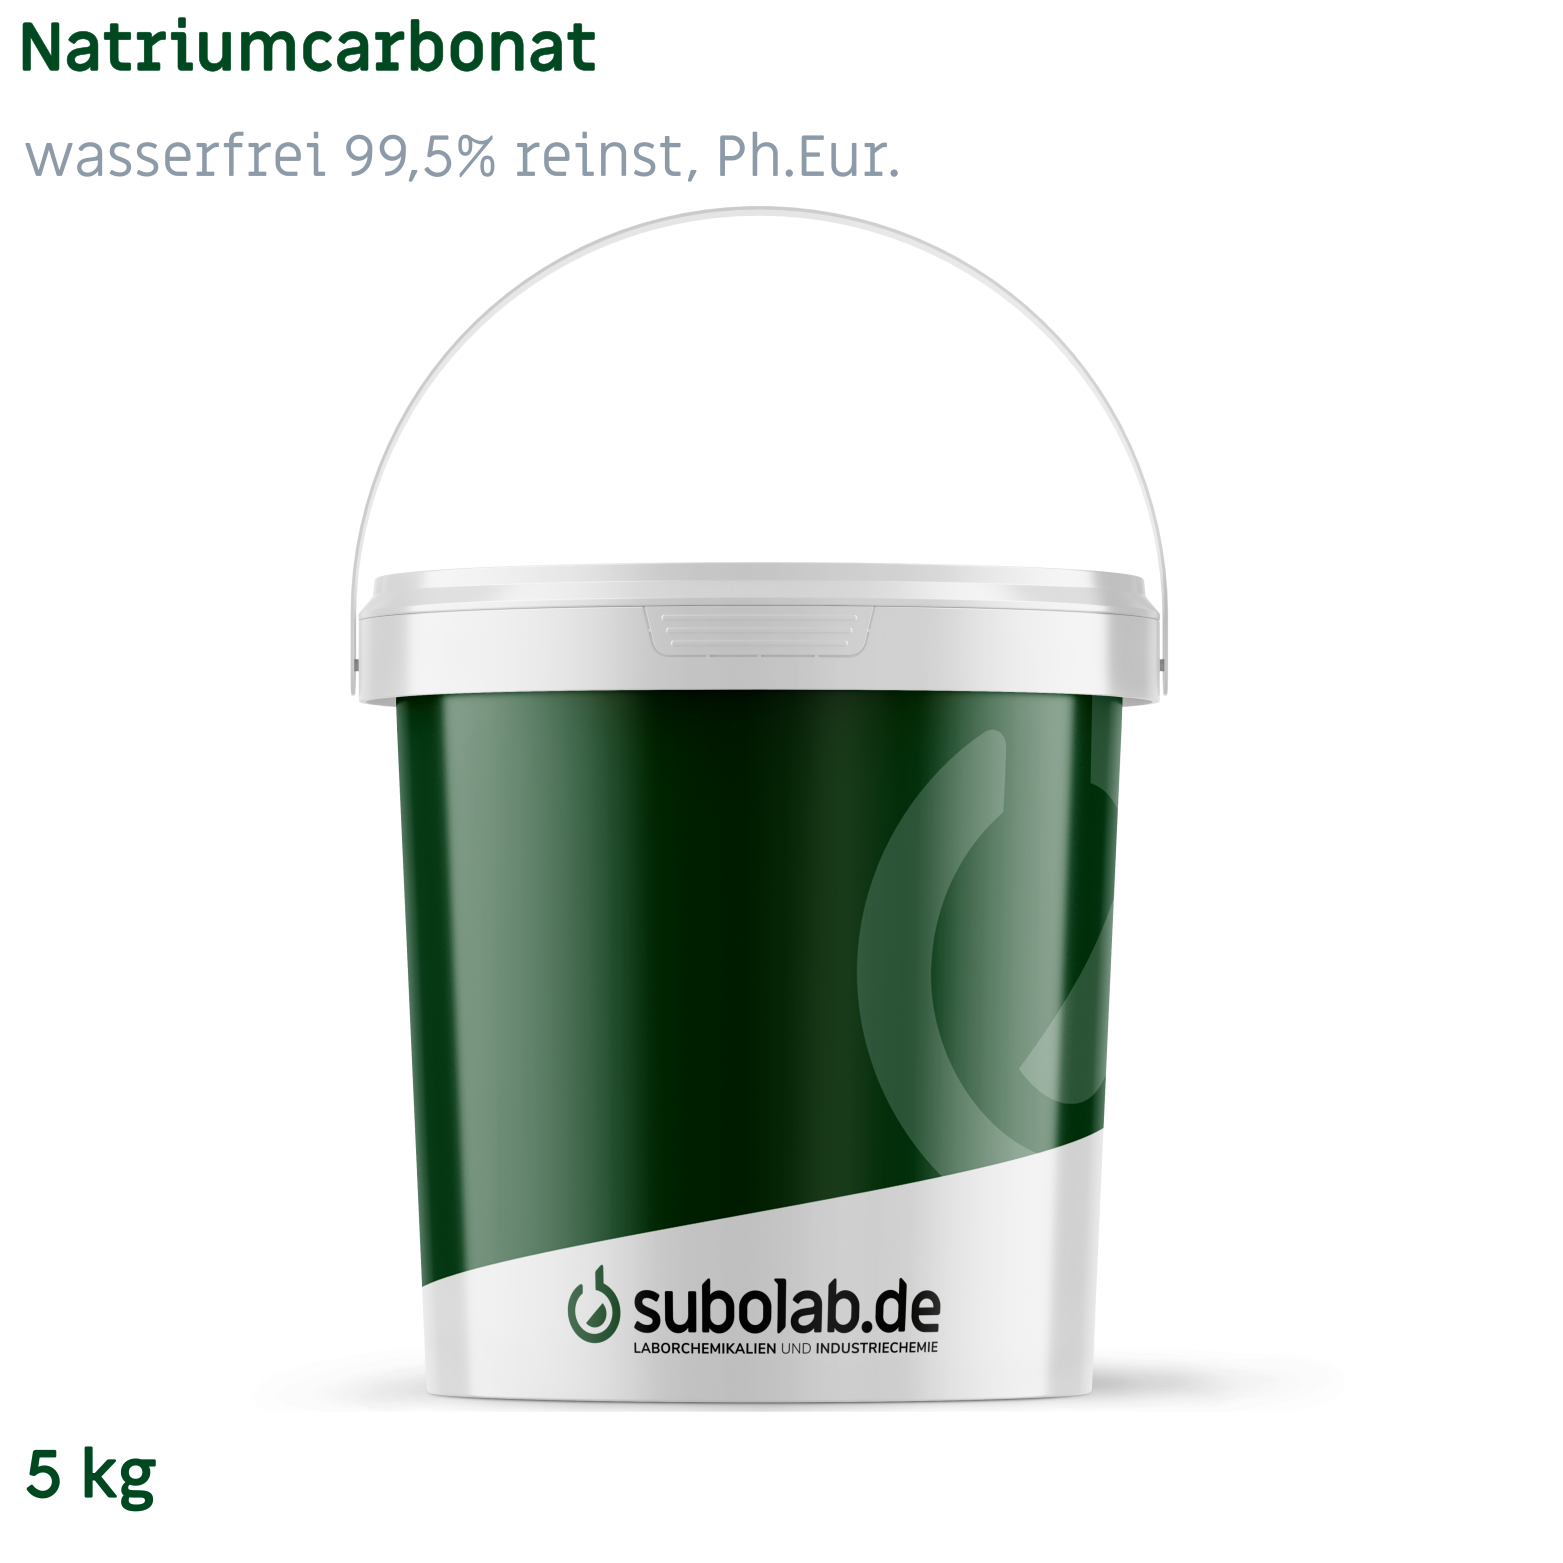 Bild von Natriumcarbonat - wasserfrei 99,5% reinst, Ph.Eur. (5 kg)